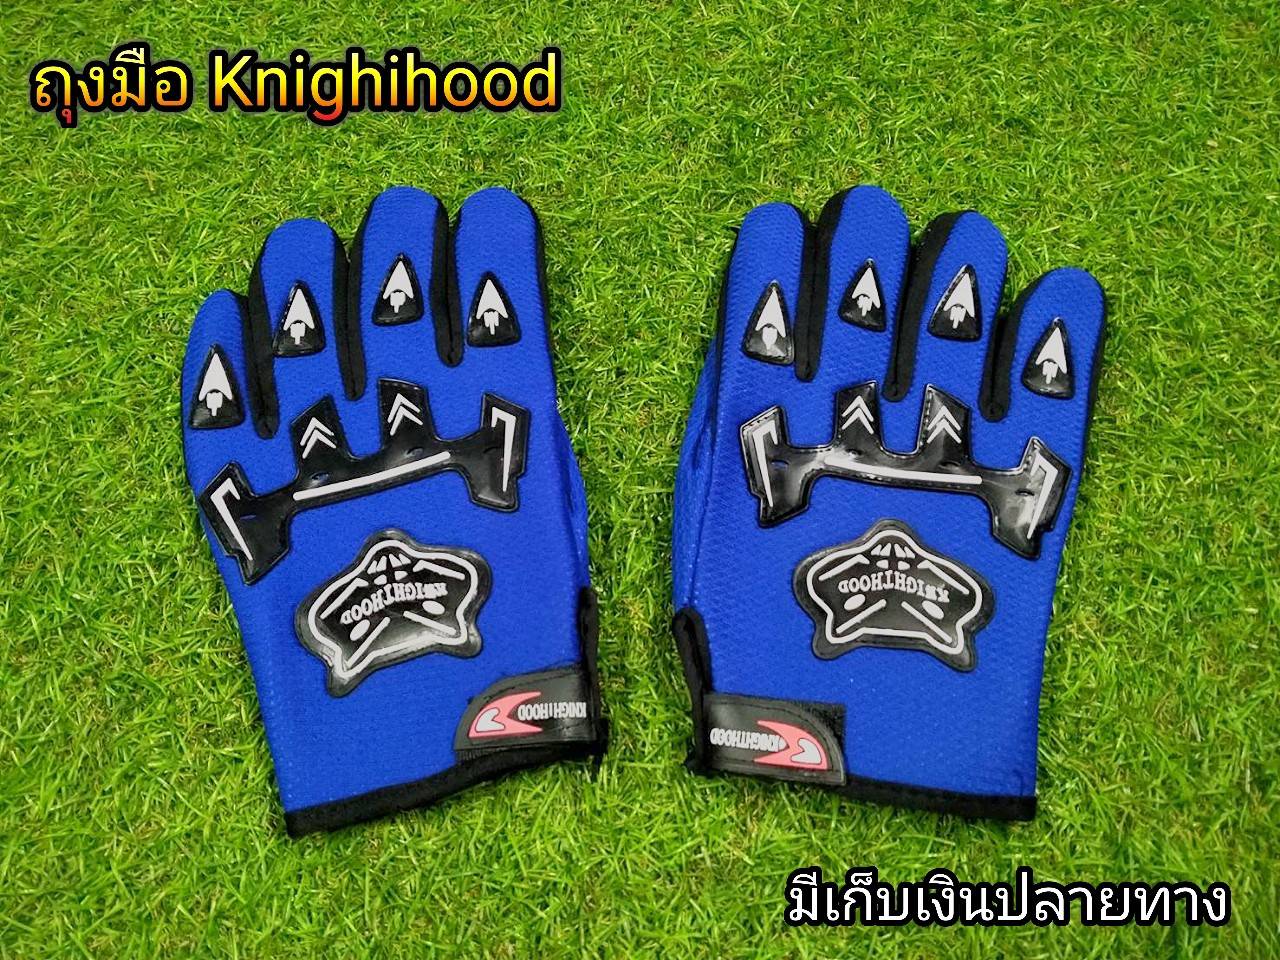 ลดราคาพิเศษ ถุงมือKnighihood สีน้ำเงิน ถุงมือขับมอเตอไซต์ Knighihood  ใยผ้าคุณภาพ ระบายอากาศได้ดี